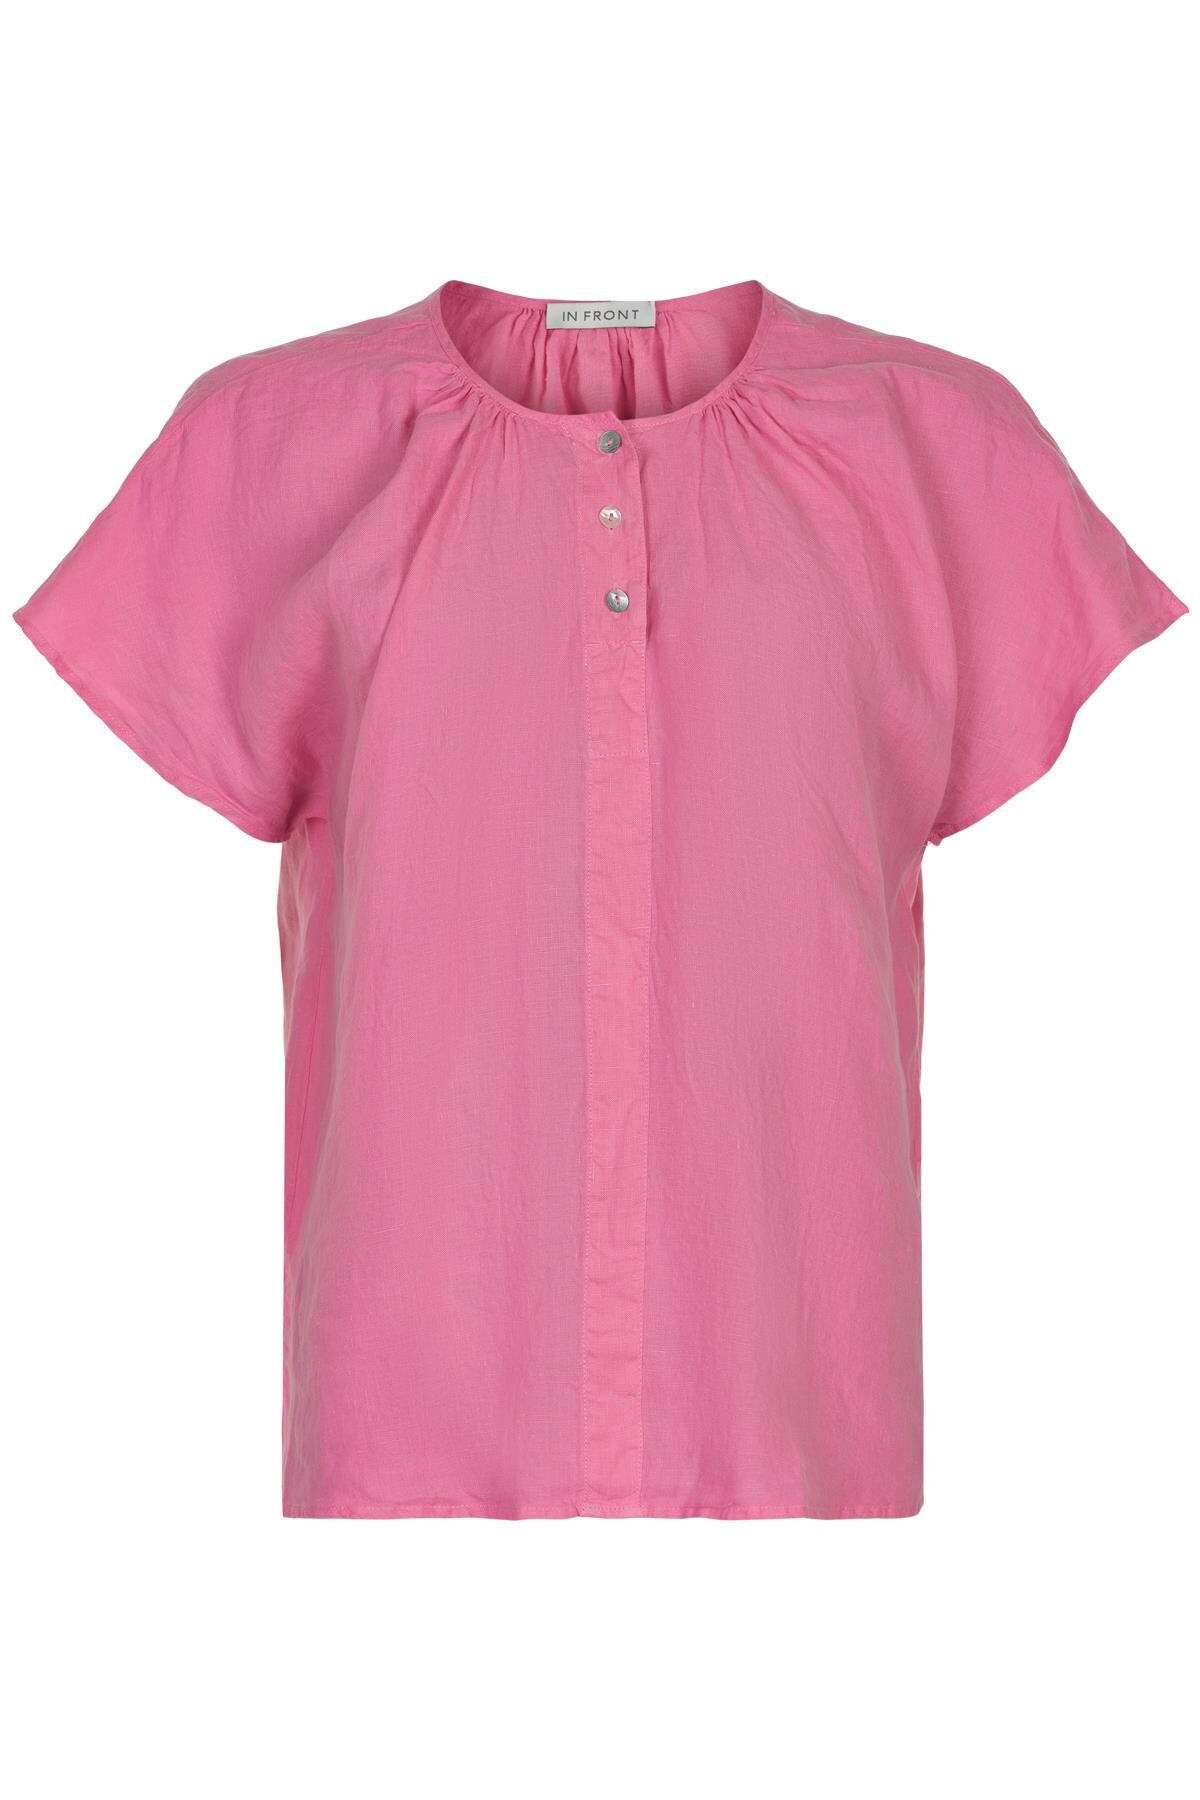 In Front Lino Bluse, Farve: Pink, Størrelse: M, Dame